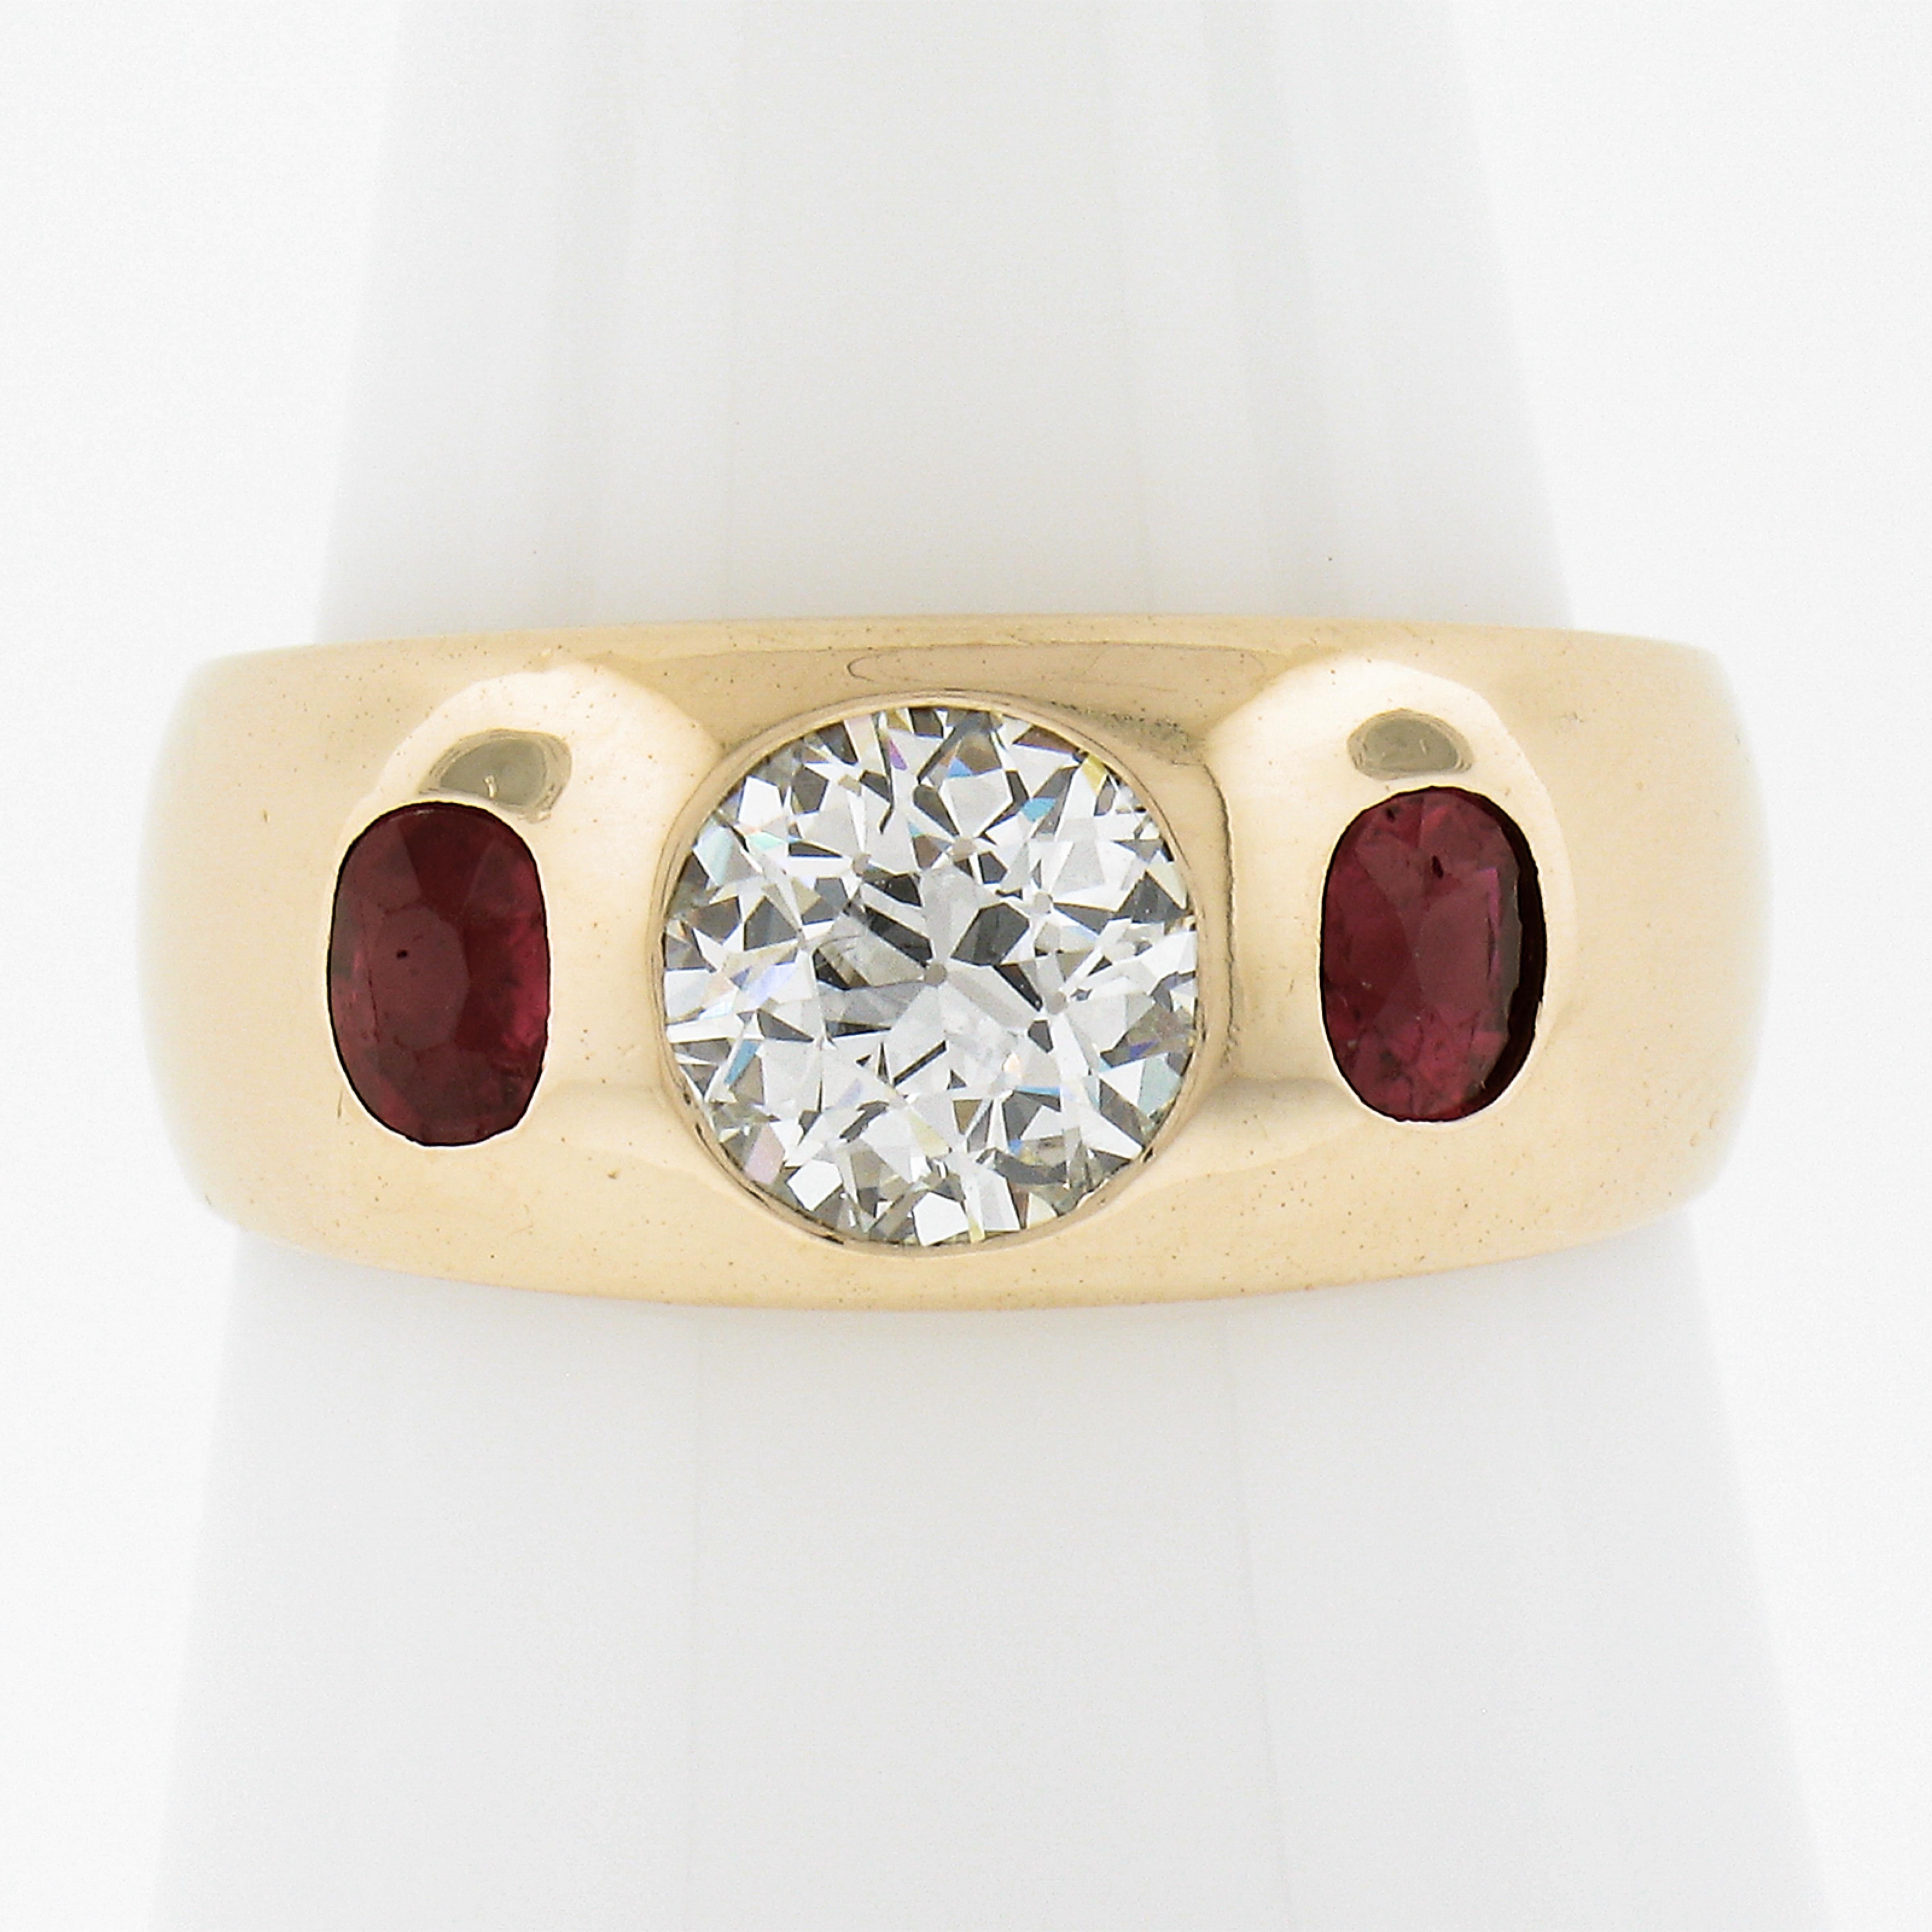 Hier haben wir eine alle ursprünglichen Ring mit einem super feurigen alten europäischen geschnittenen Diamanten Zentrum bündig mit alten ovalen geschnittenen Rubinen auf beiden Seiten gesetzt. Dieser Ring befindet sich in ausgezeichnetem Zustand